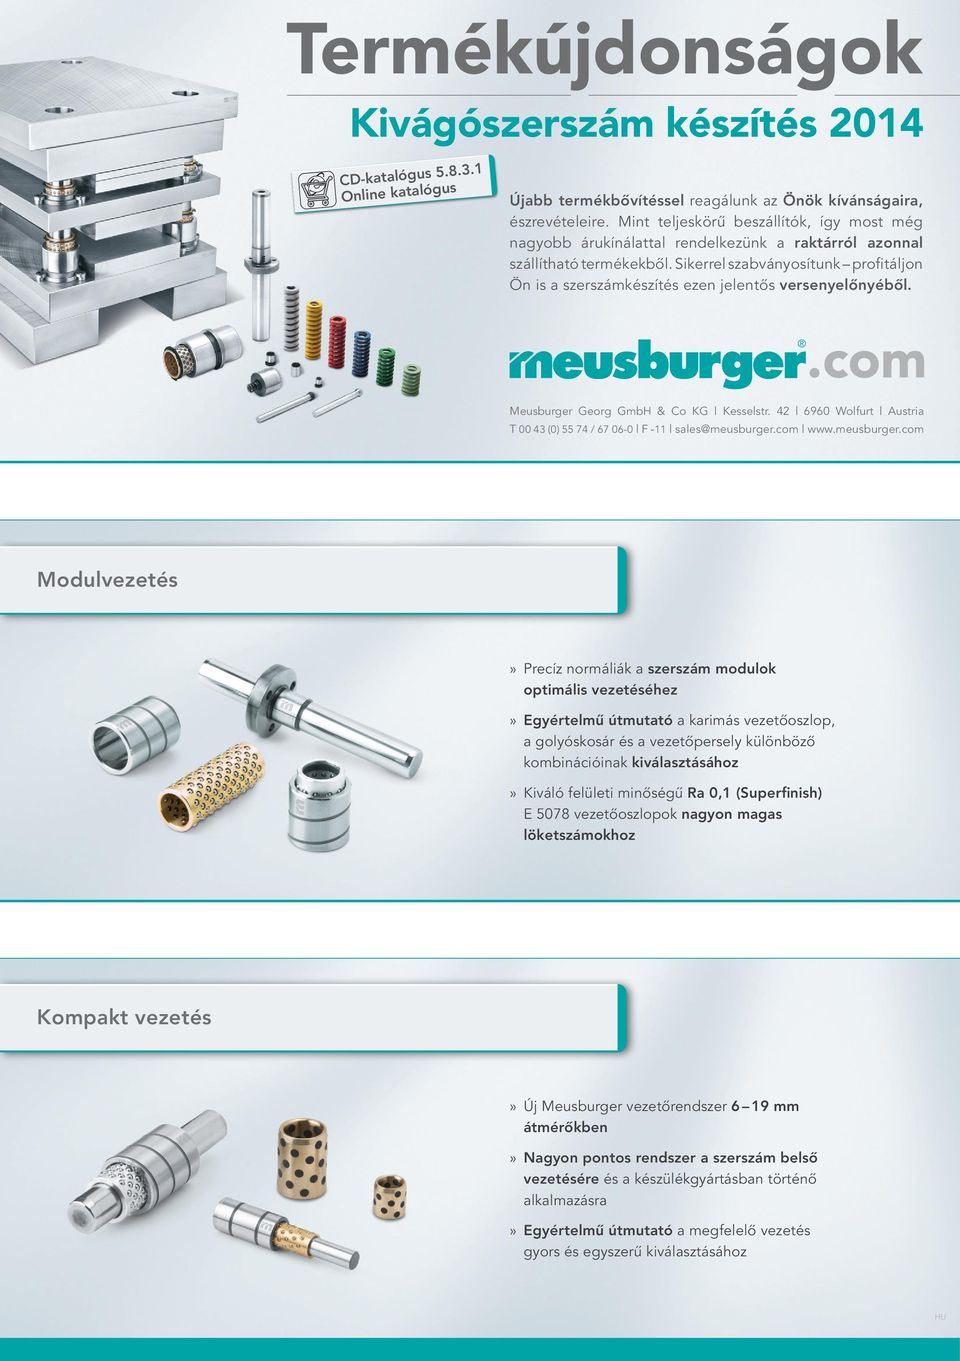 Sikerrel szabványosítunk profitáljon Ön is a szerszámkészítés ezen jelentős versenyelőnyéből. Meusburger Georg GmbH & Co KG Kesselstr.